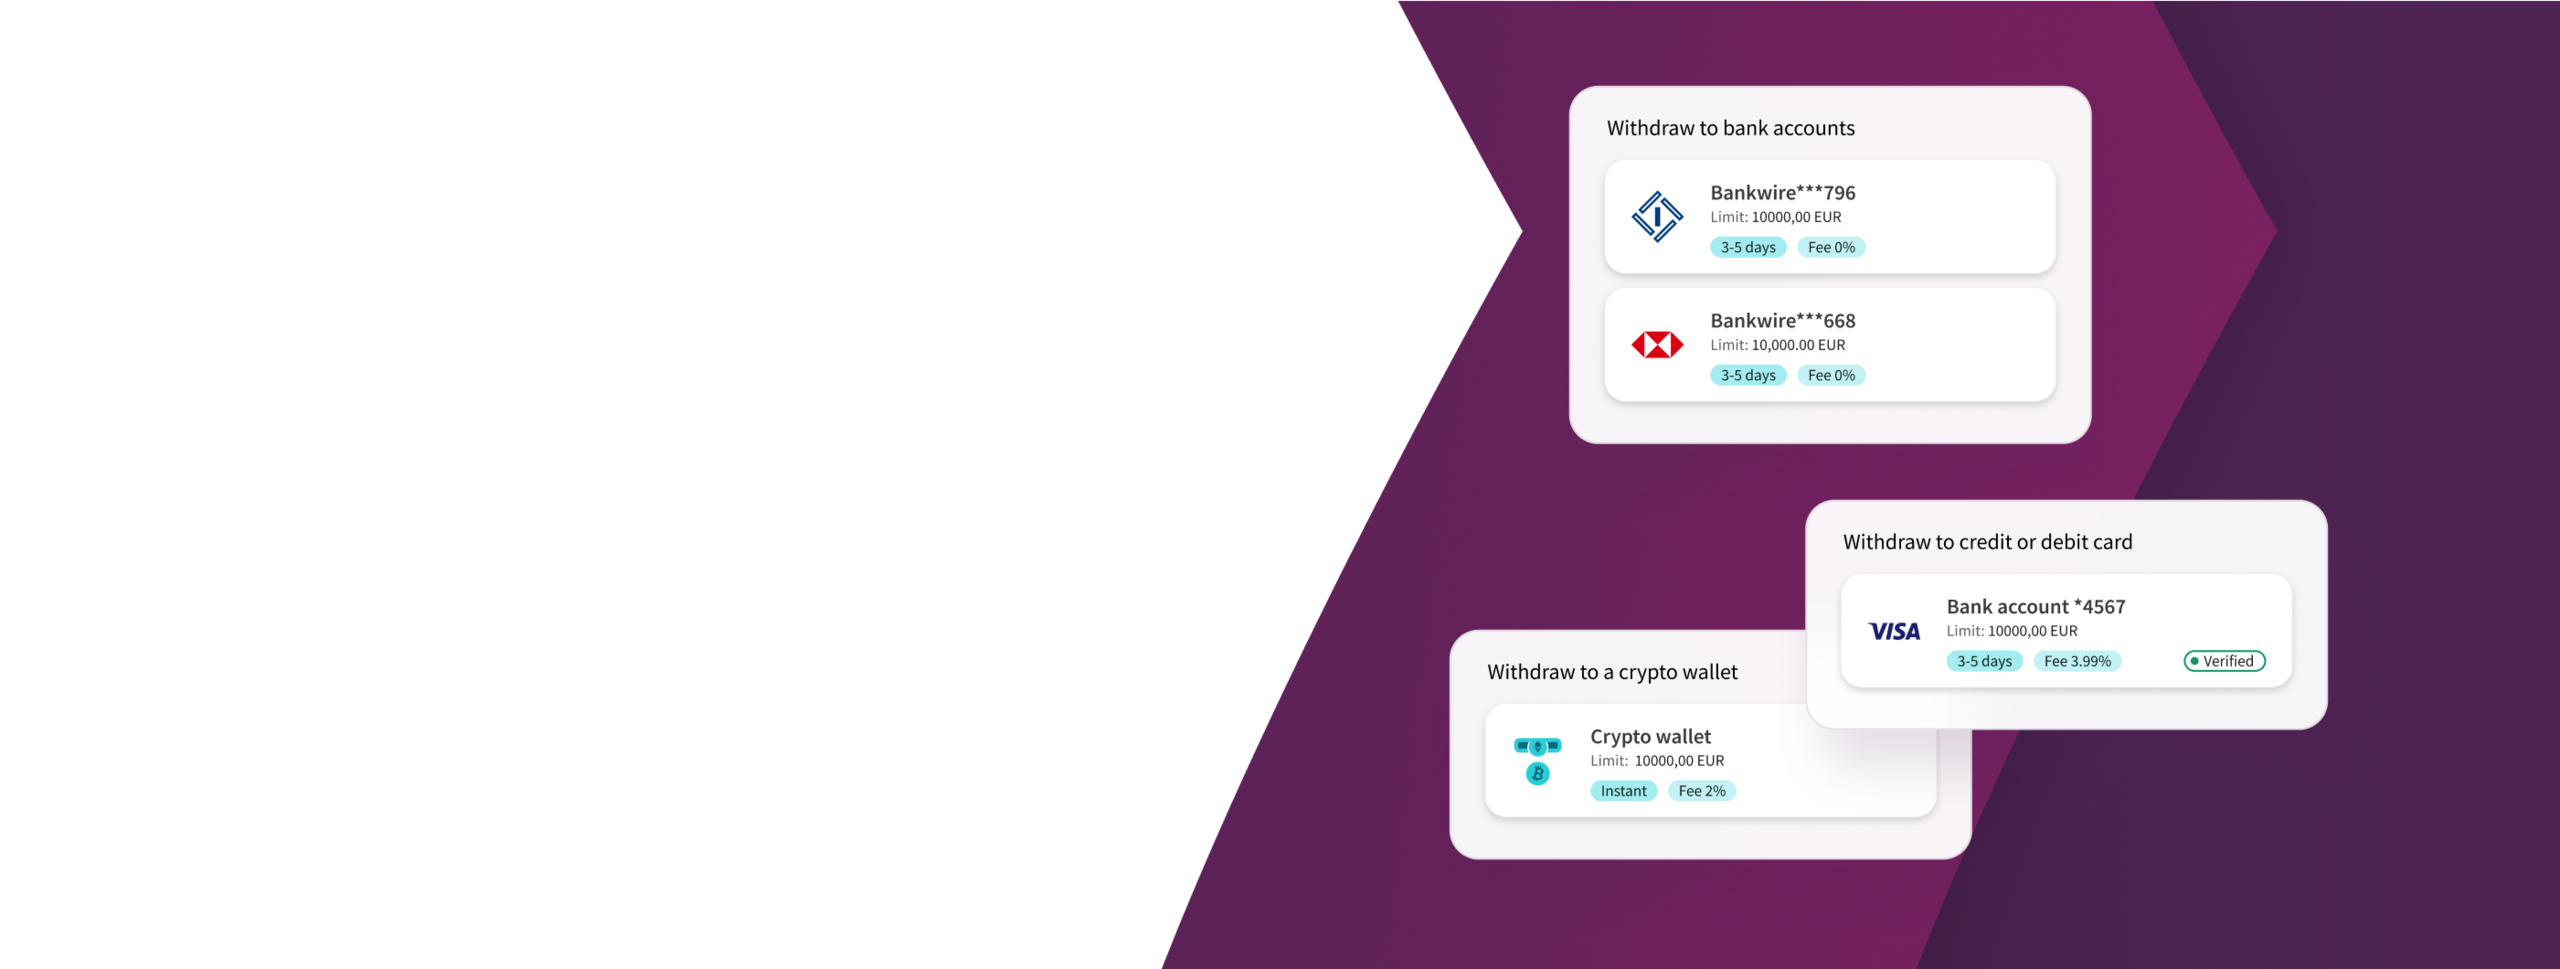 логотипы криптовалют Bitcoin, Ethereum, Litecoin на фоне фирменных пурпурных стрелок Skrill